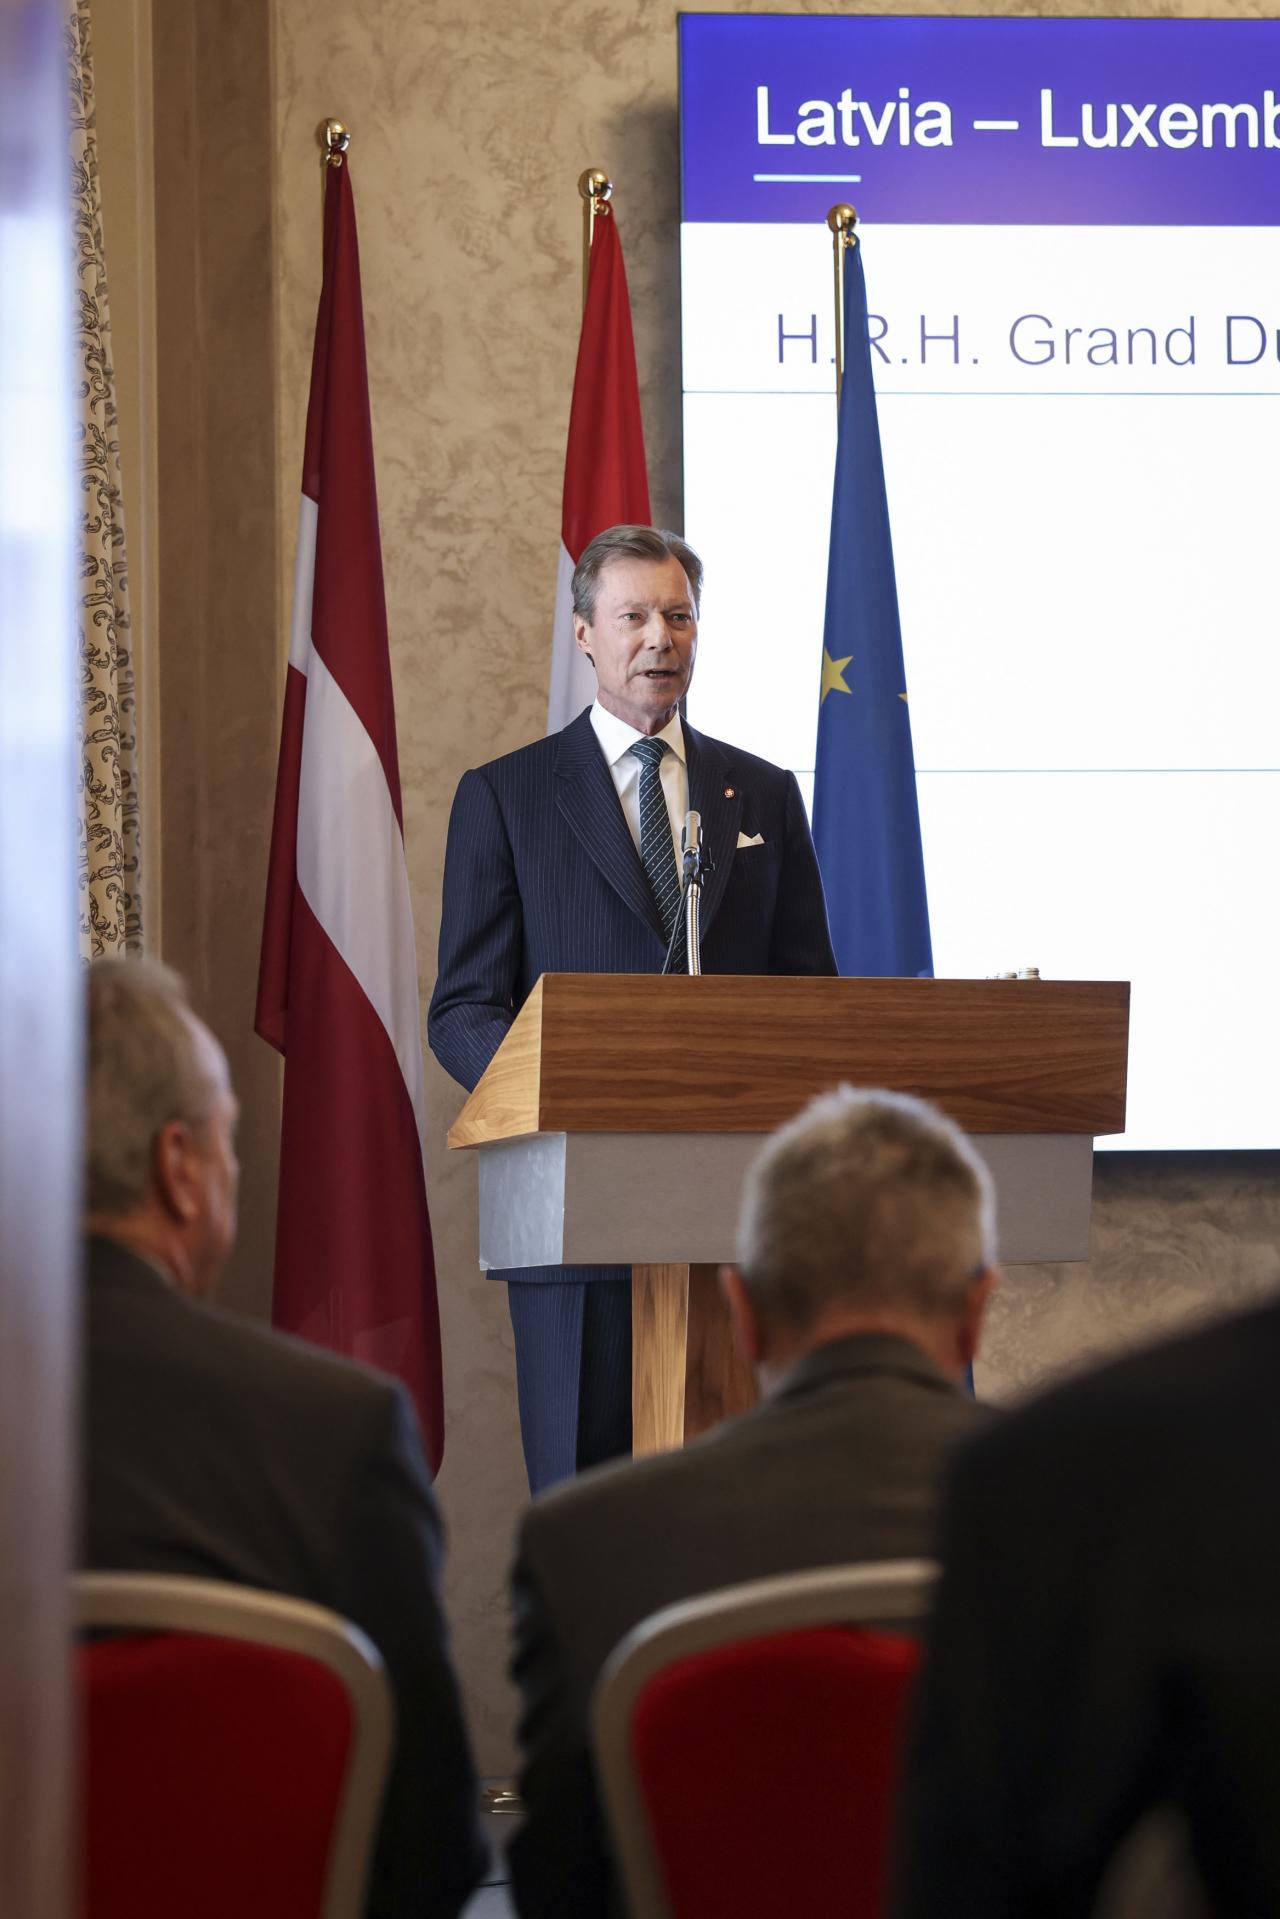 Le Grand-Duc prononce un discours lors du forum économique